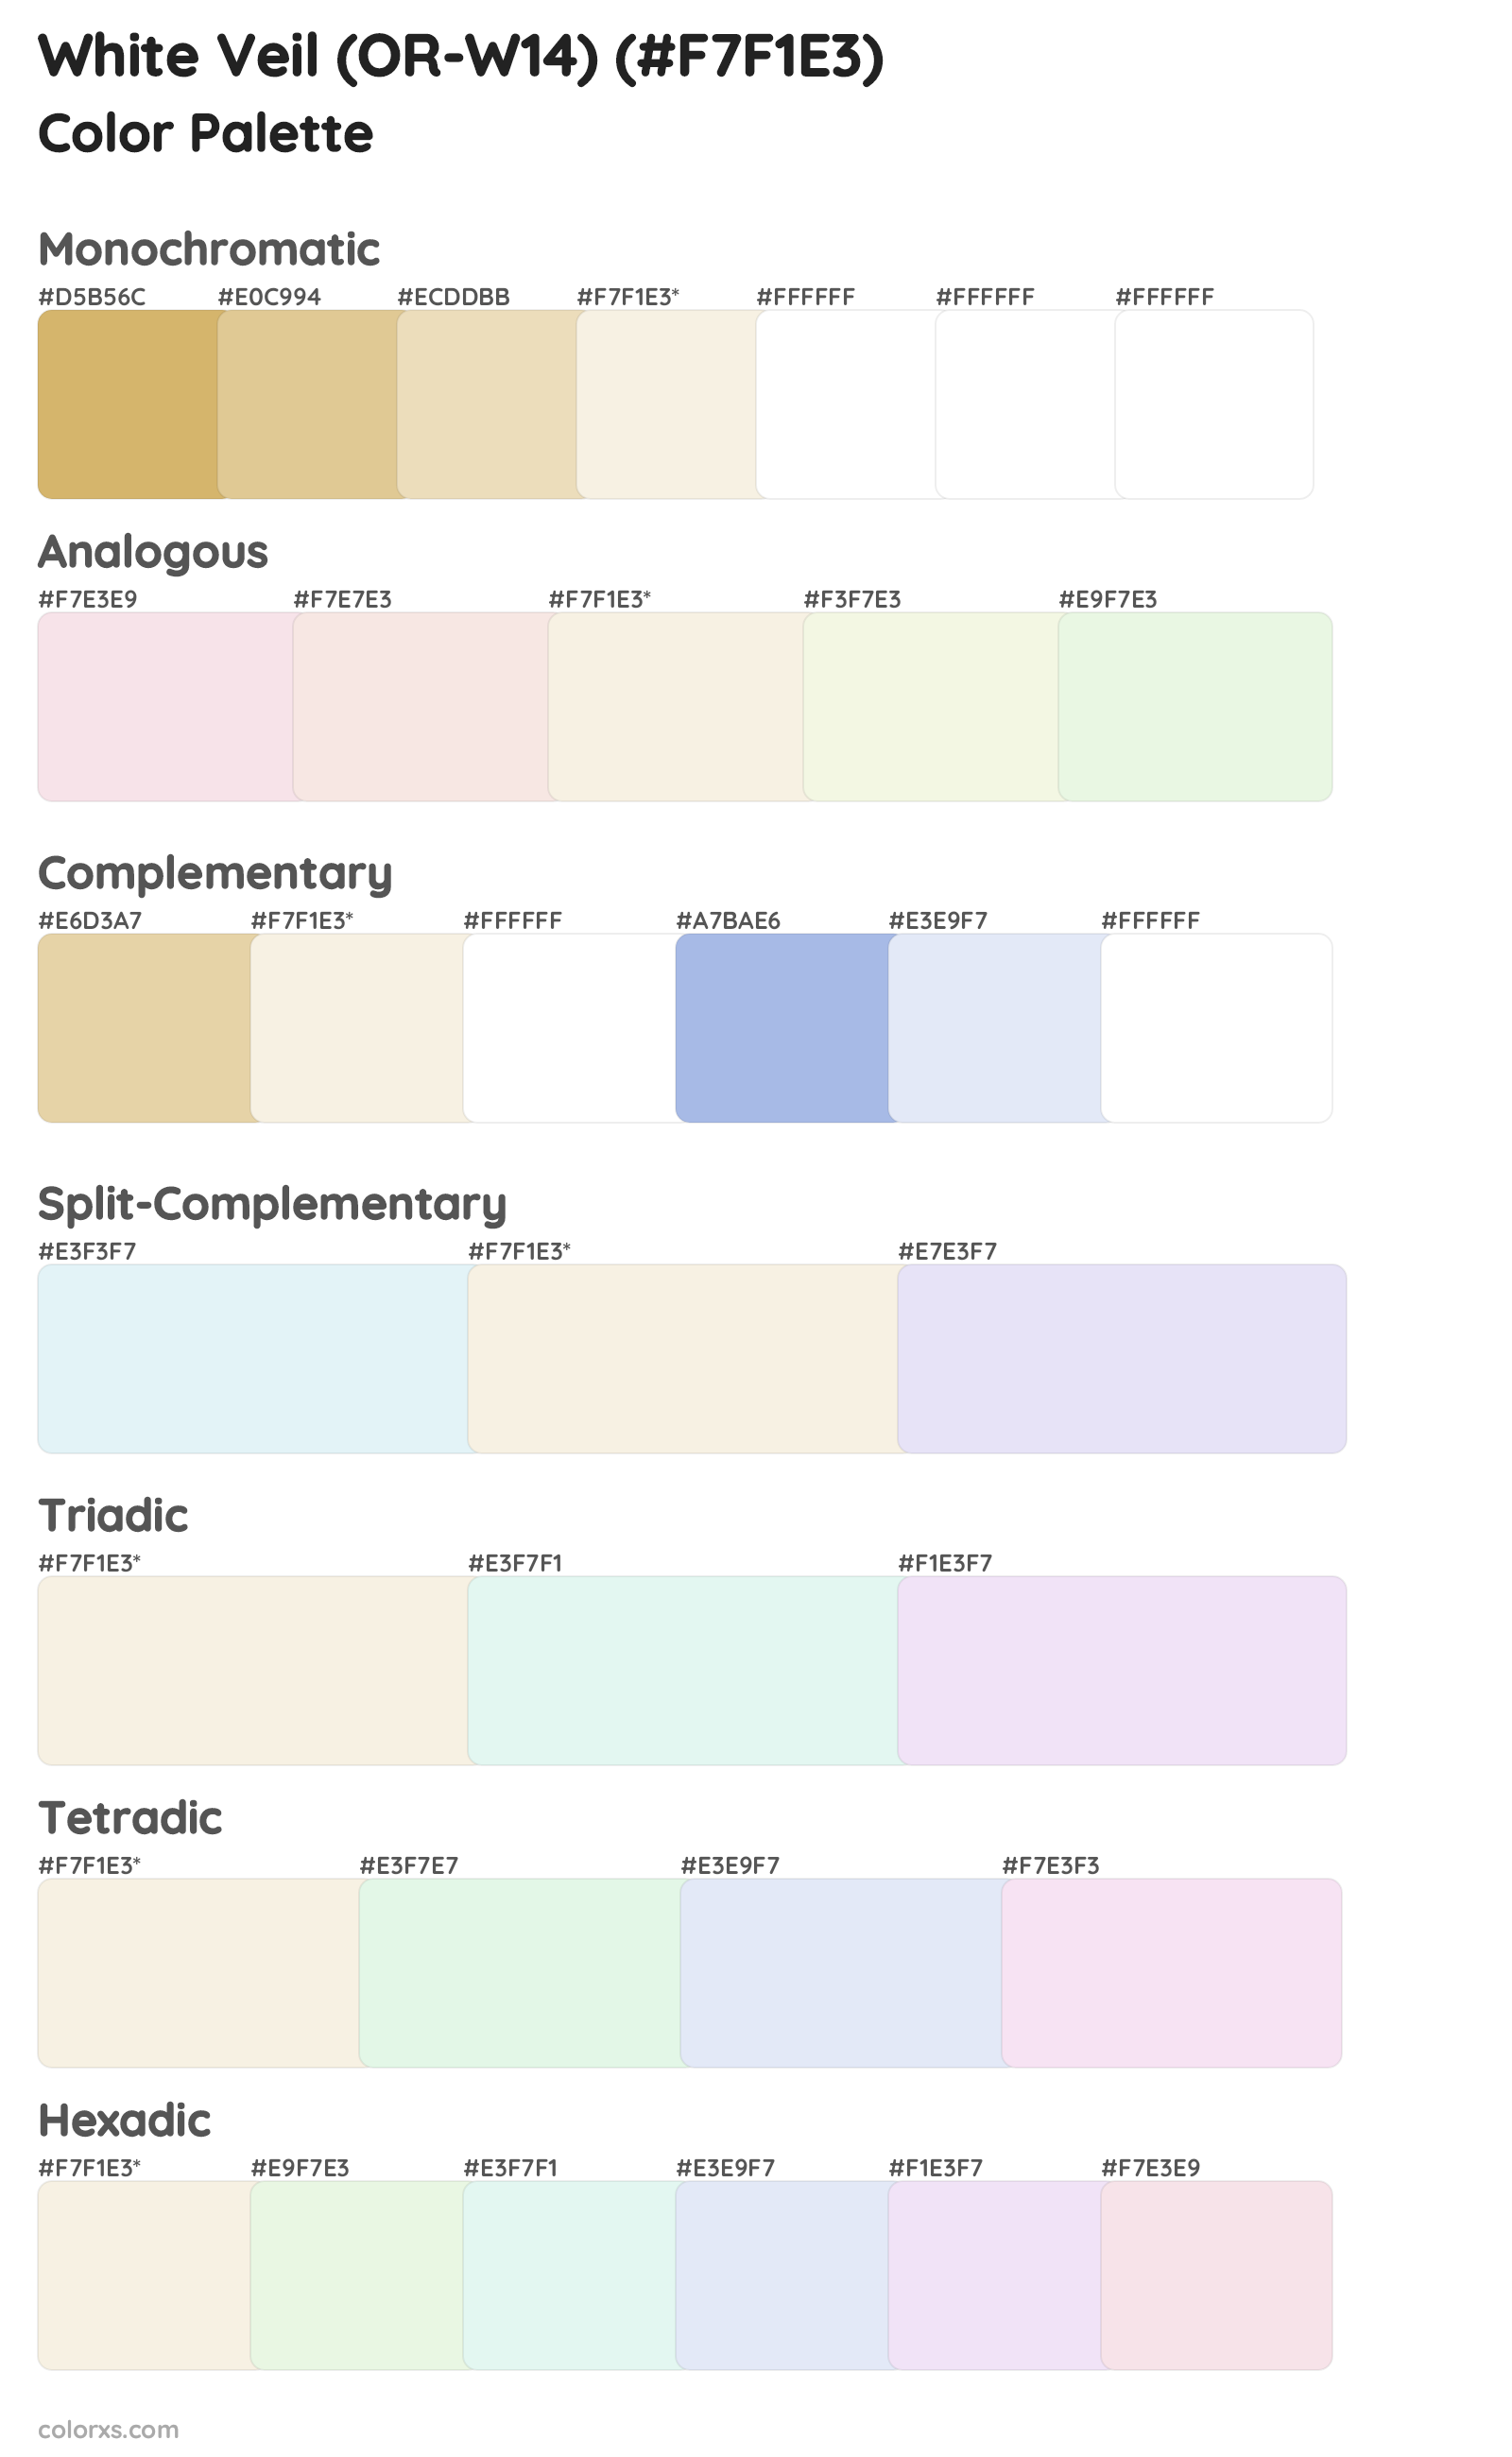 White Veil (OR-W14) Color Scheme Palettes